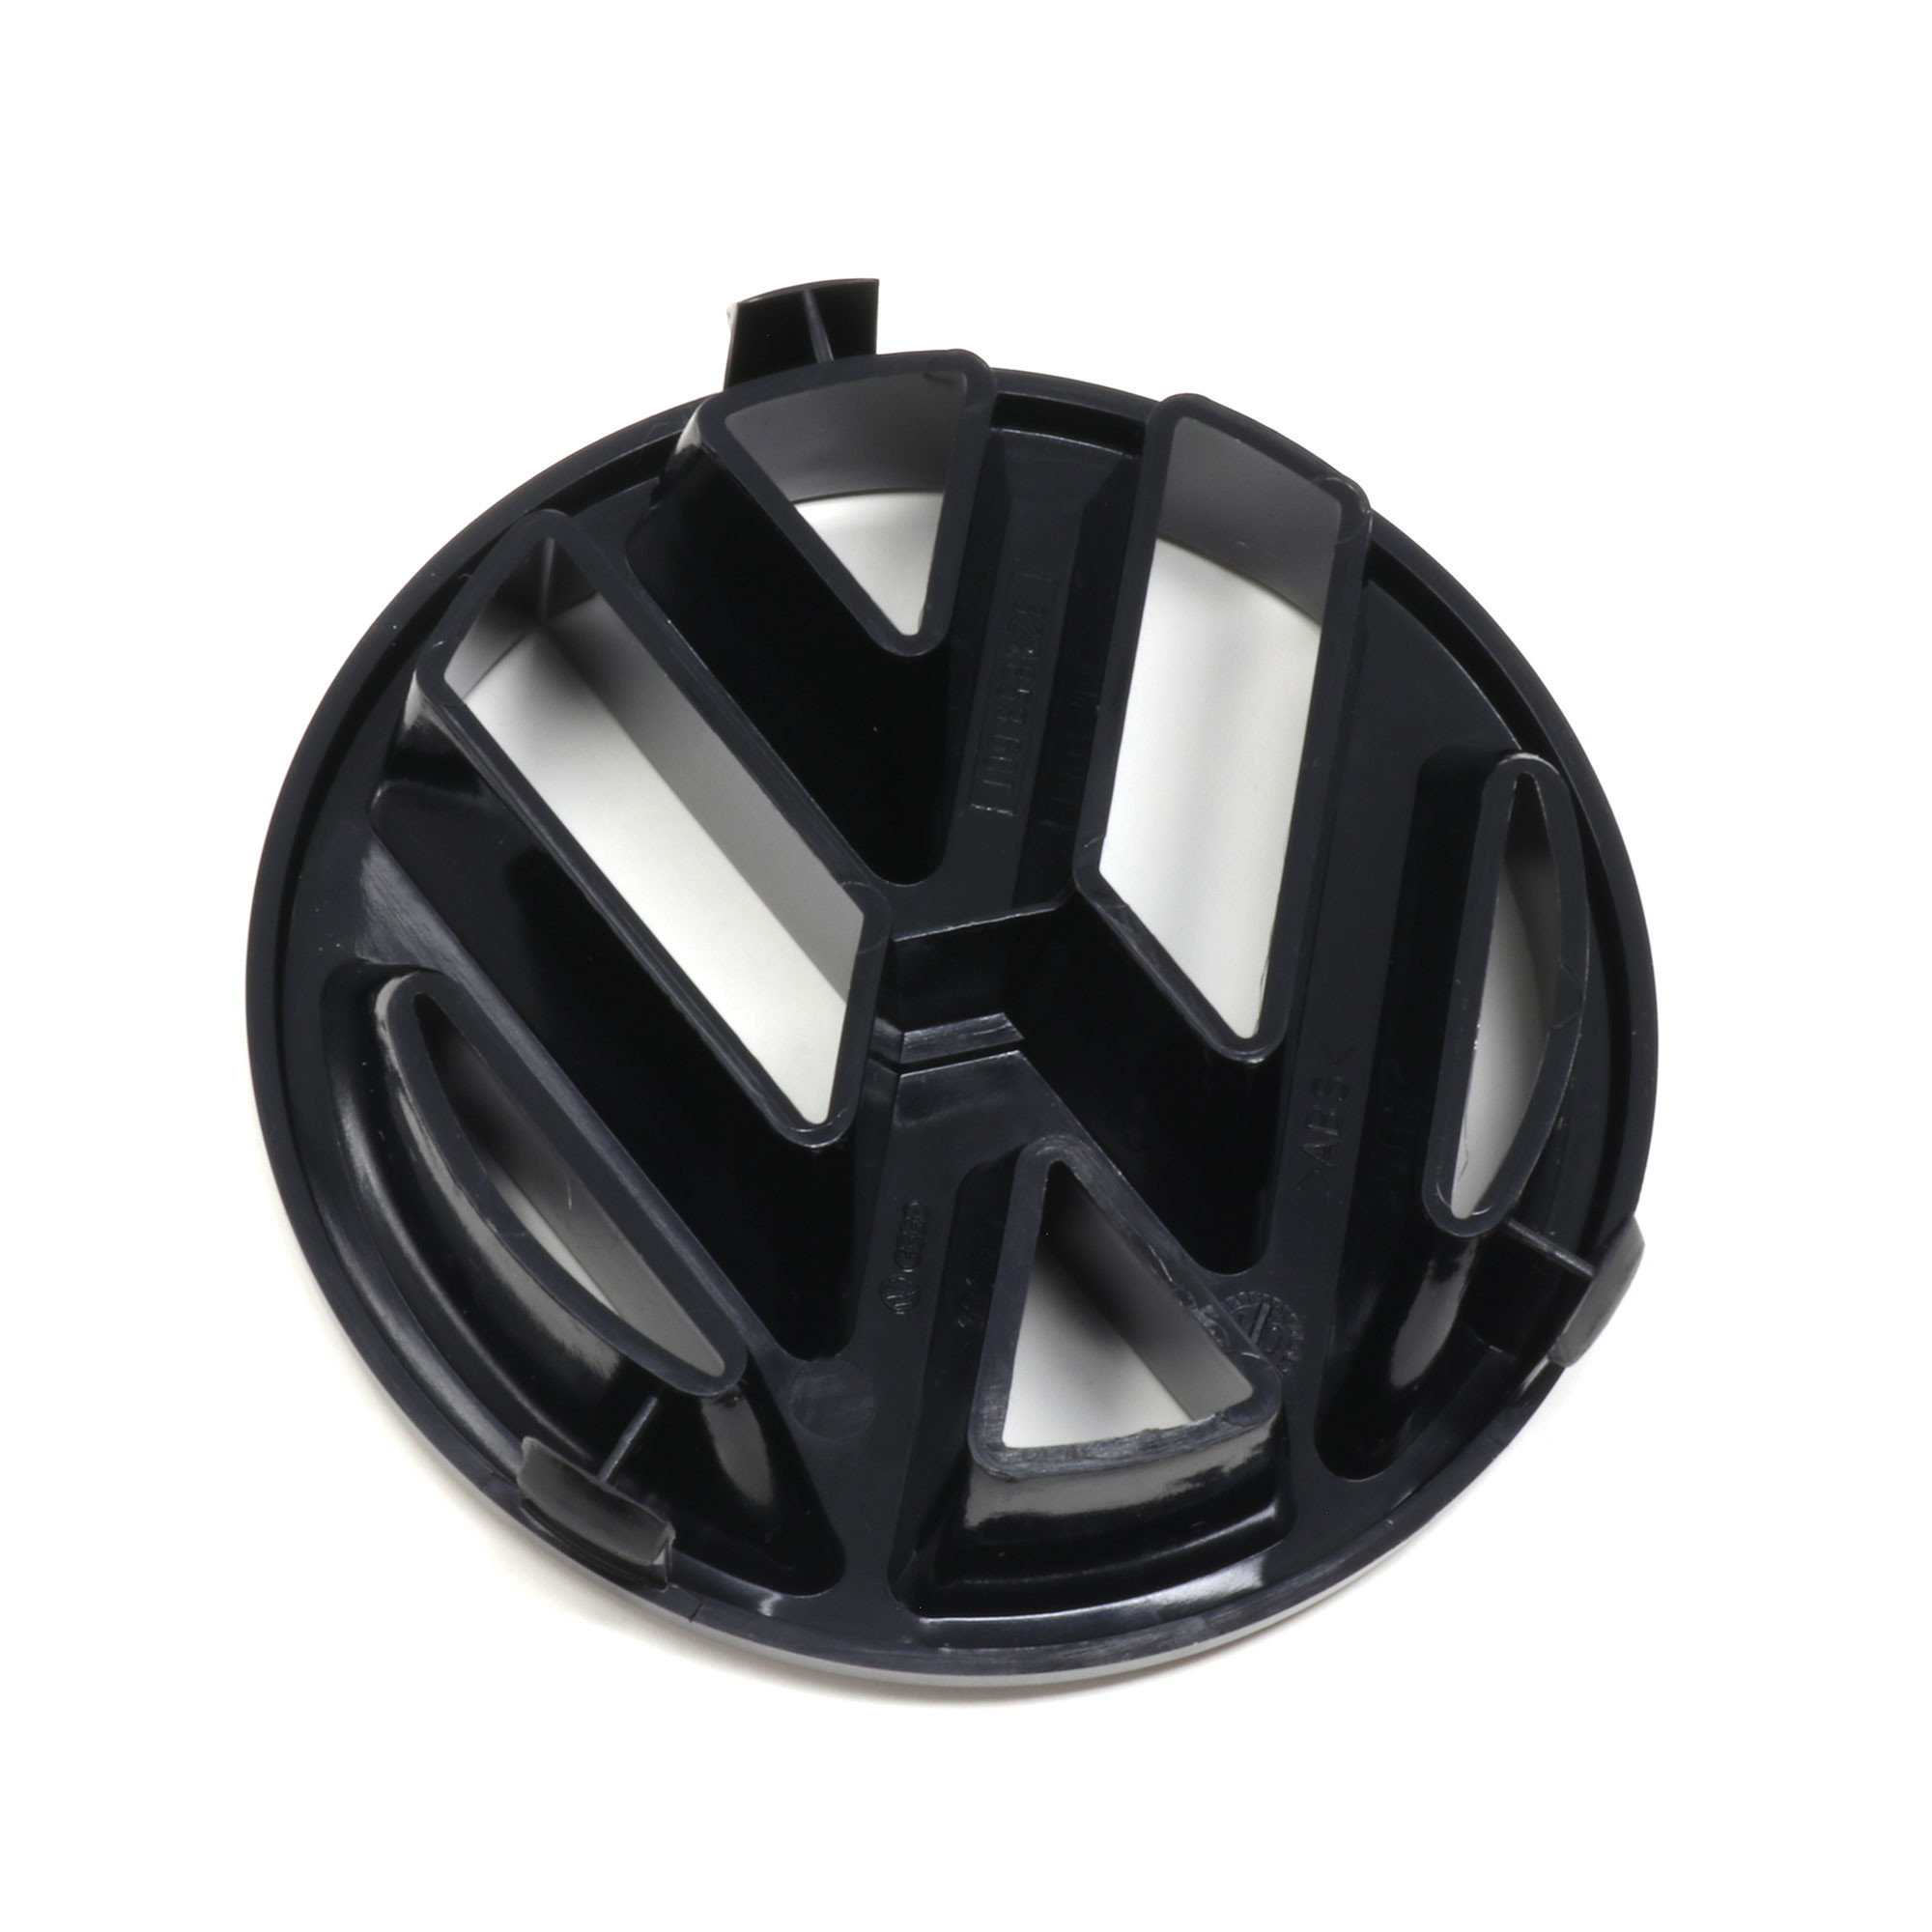 VW Zeichen Original VW Golf 4 Emblem schwarz-glänzend vorn Volkswagen  Zeichen